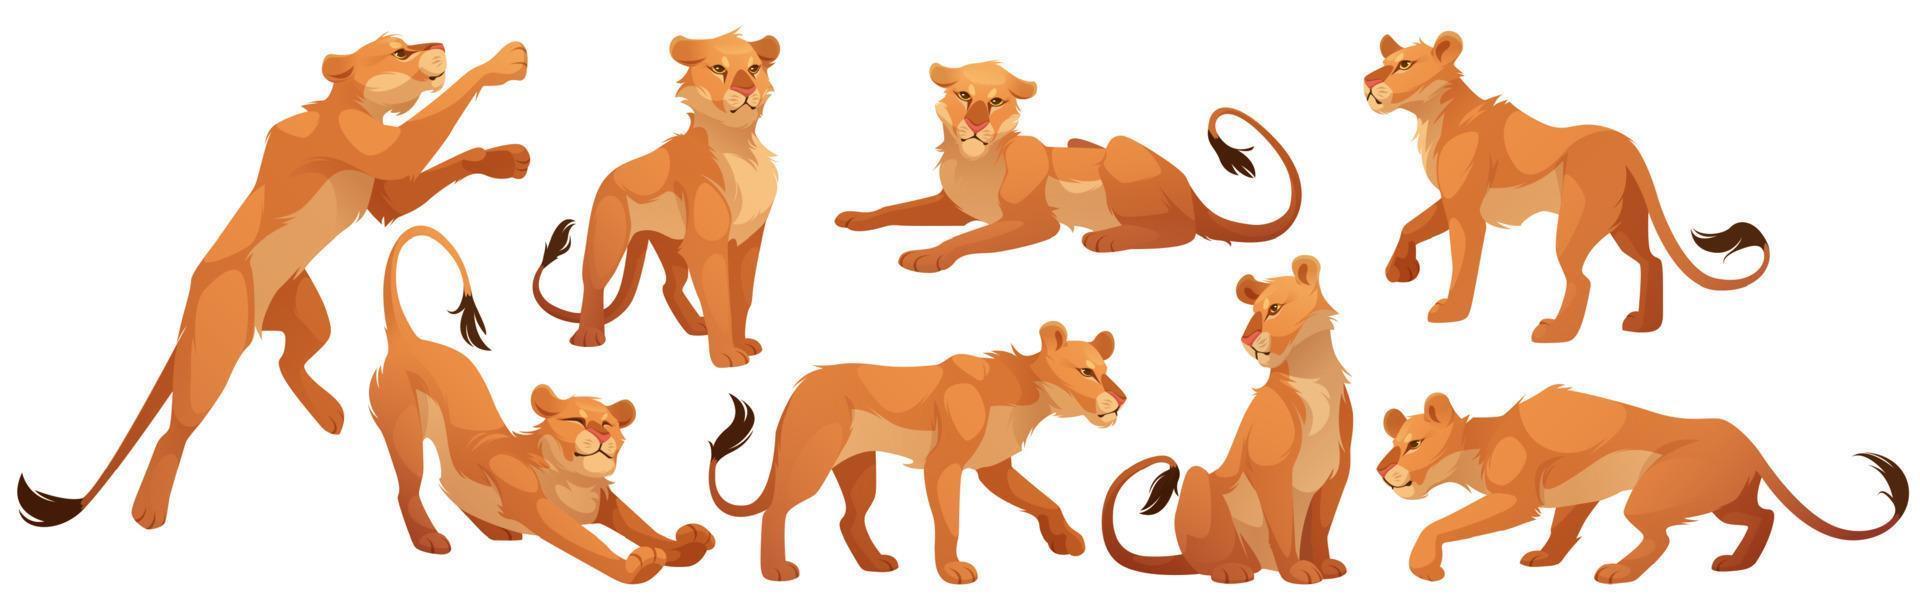 leeuwin karakter, wild kat in verschillend poses vector